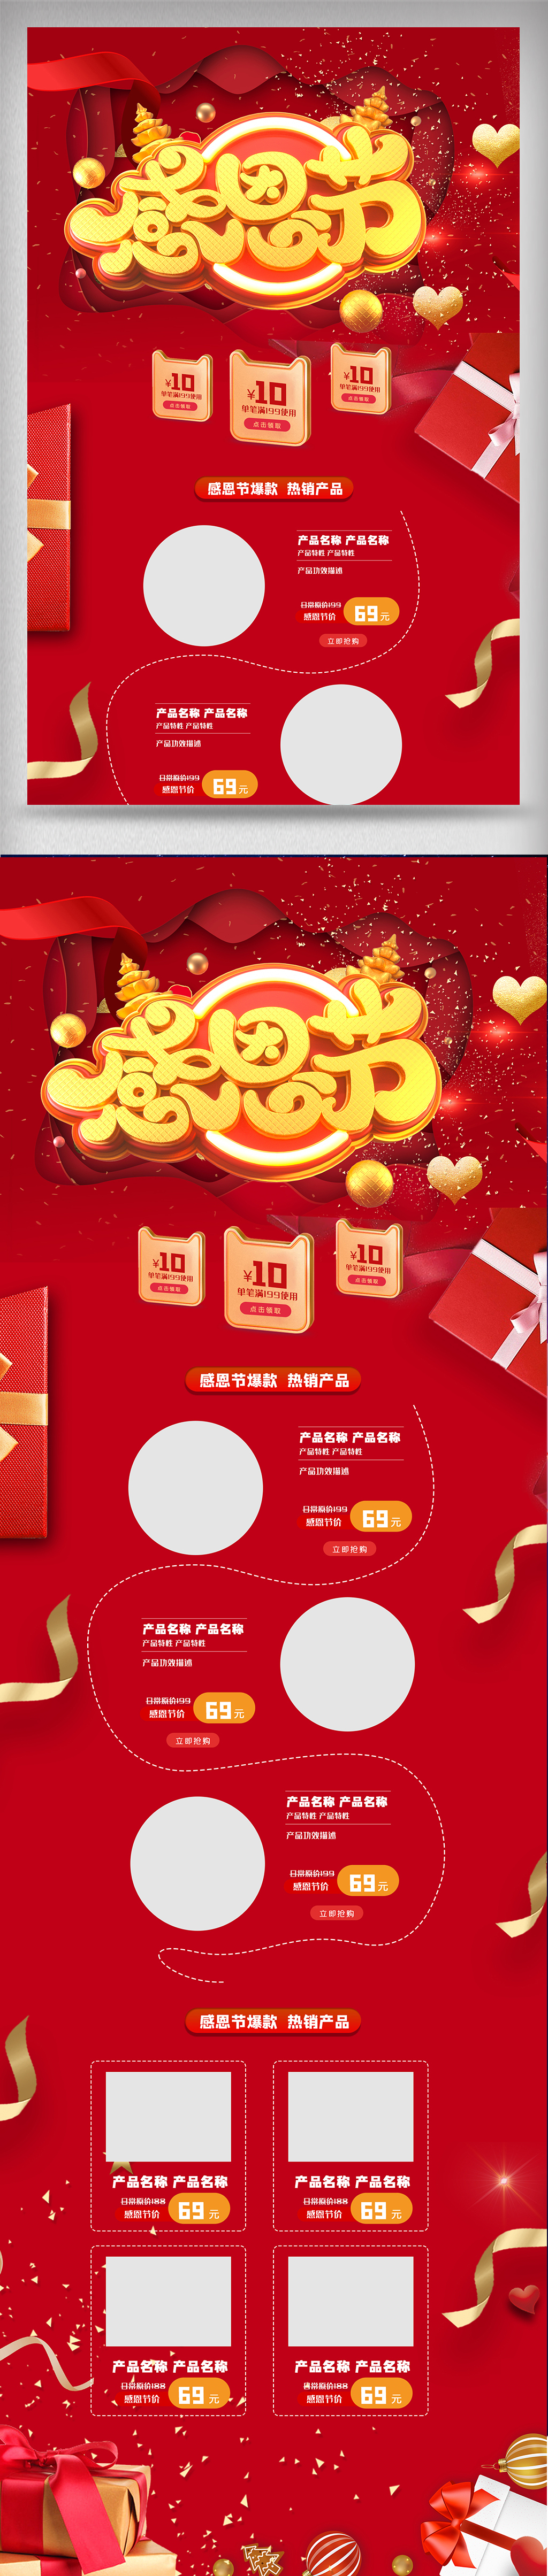 红色喜庆感恩节电商首页模板图图片